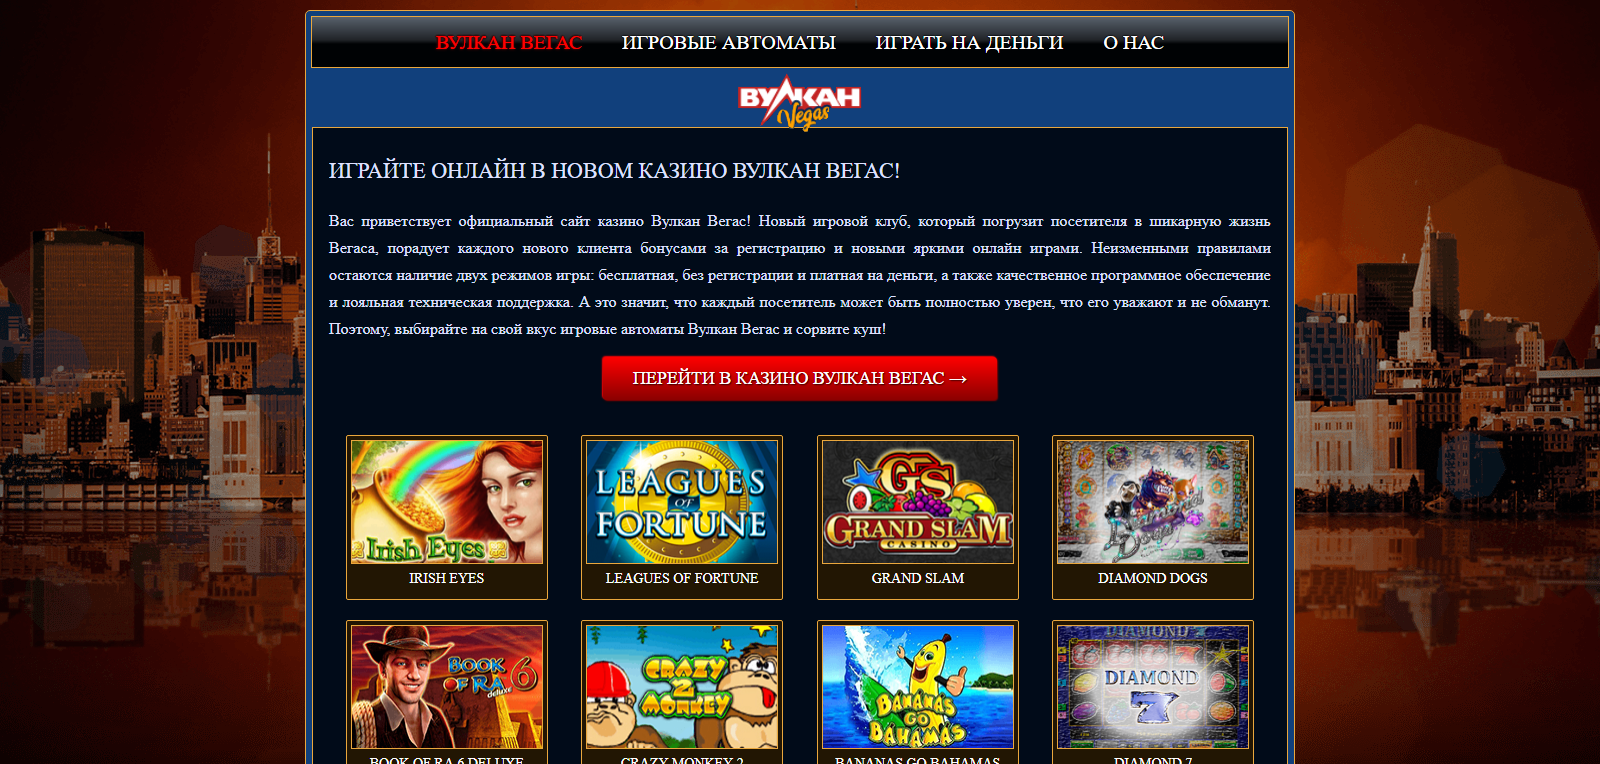 Казино вегас автоматы играть онлайн сейчас казино azartplay отзывы россия